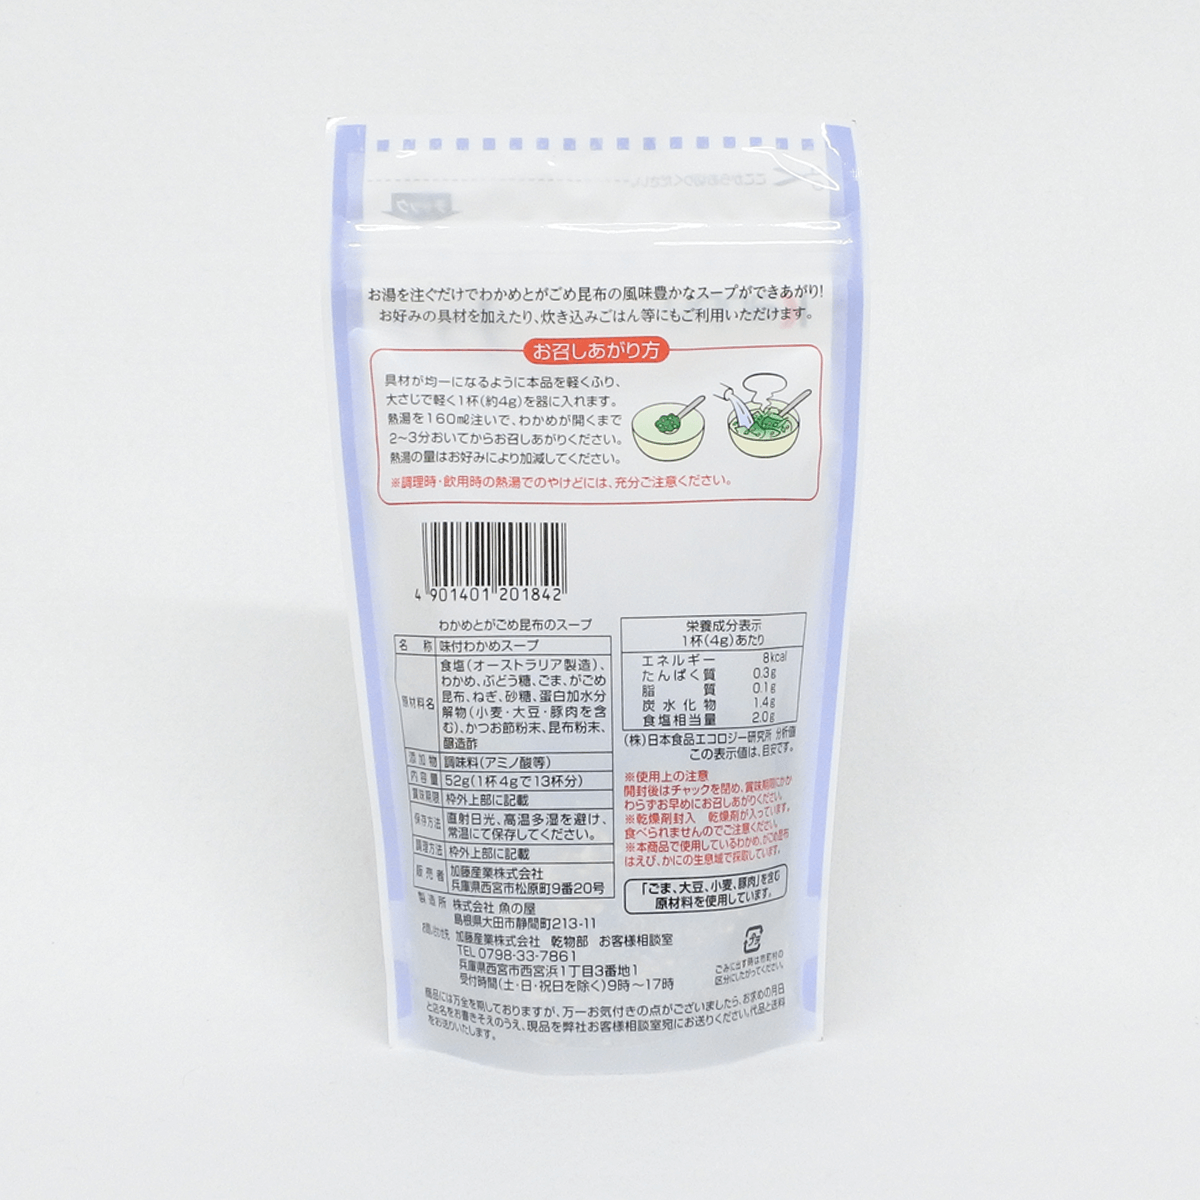 加藤產業 Kanpy 海帶與北海道昆布沖泡湯 52g×1袋